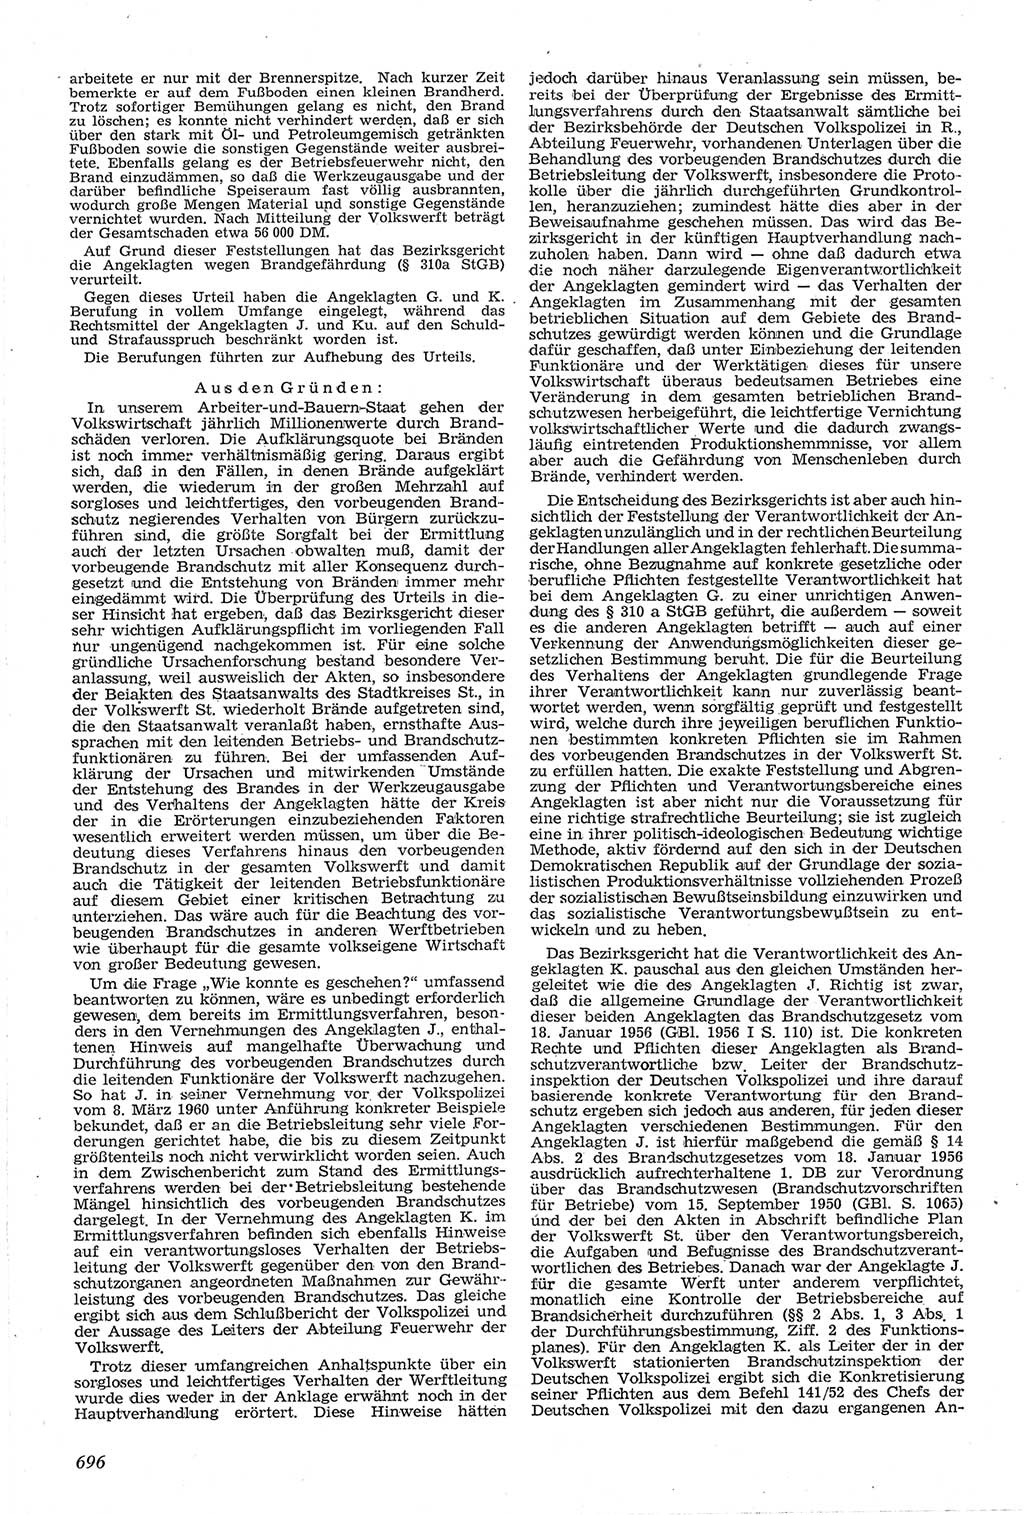 Neue Justiz (NJ), Zeitschrift für Recht und Rechtswissenschaft [Deutsche Demokratische Republik (DDR)], 14. Jahrgang 1960, Seite 696 (NJ DDR 1960, S. 696)